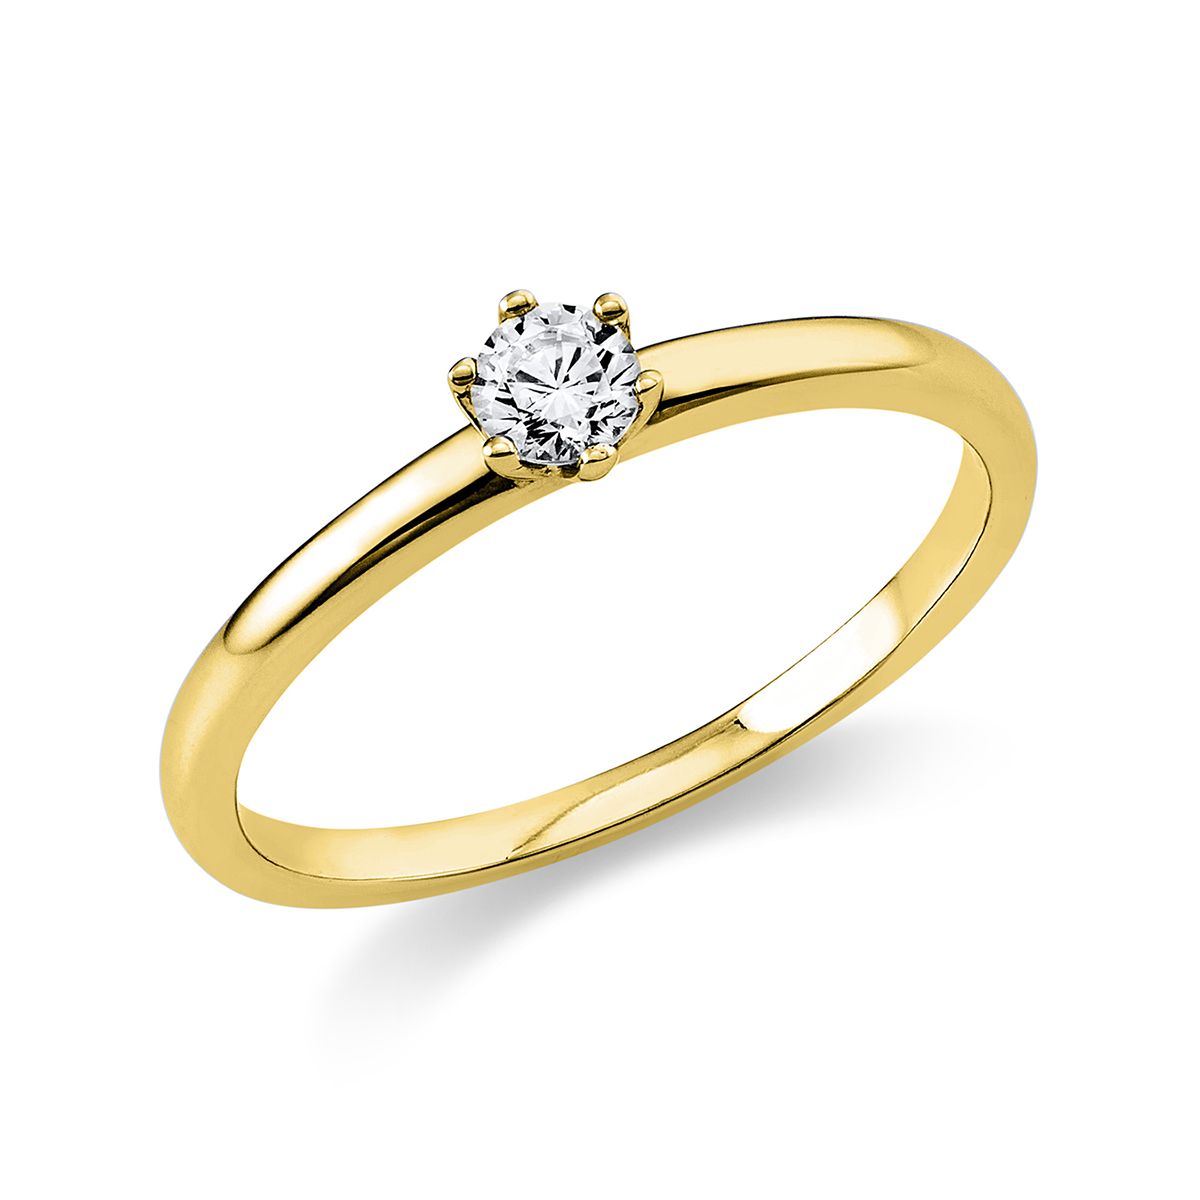 Solitär-Ring 6-Griff-Fassung 585/14K Gelbgold, Diamant 0.15 ct.